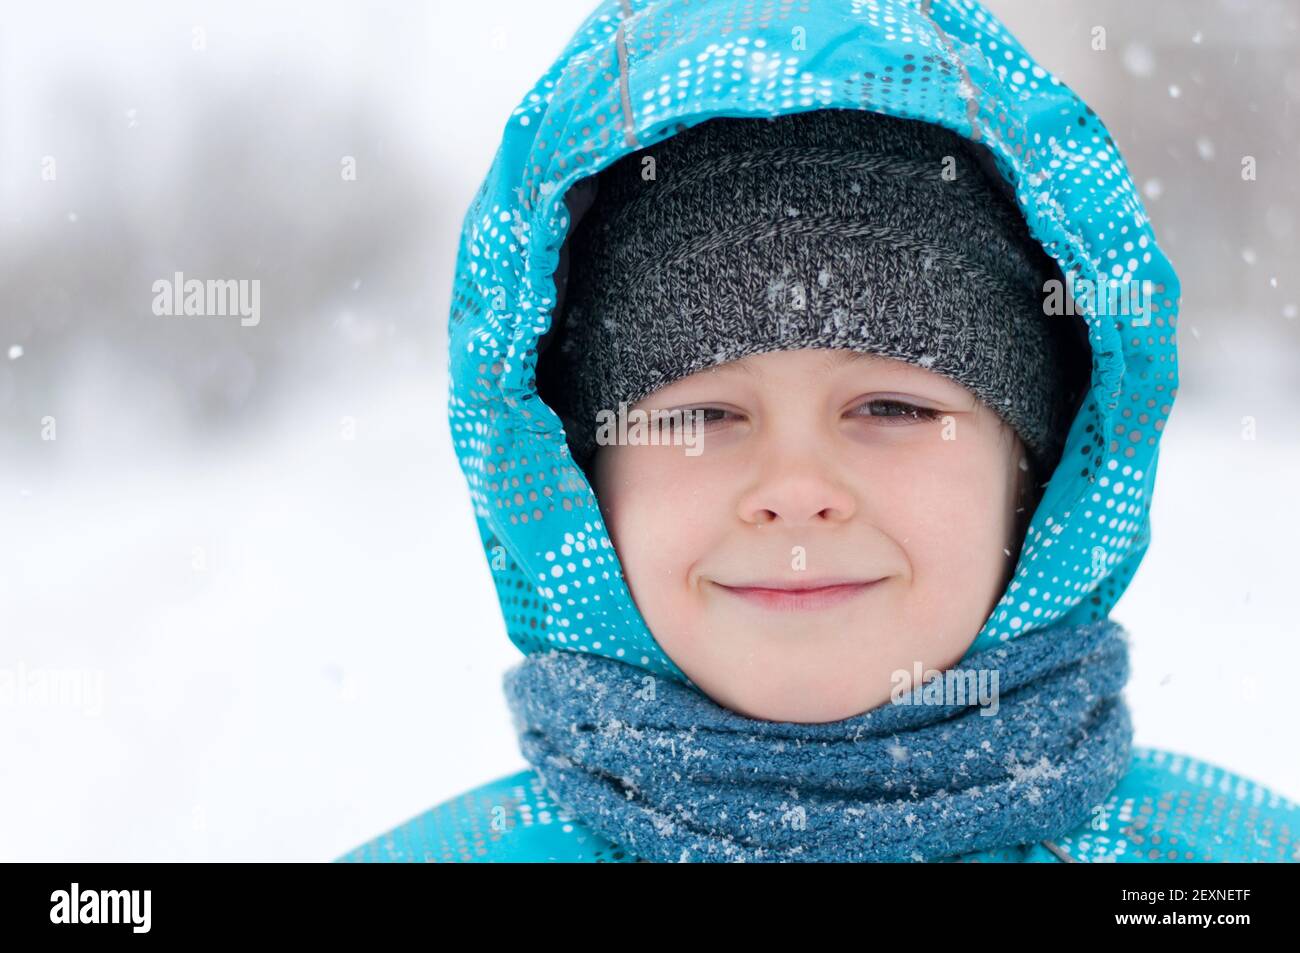 Ritratto di un ragazzo durante una tempesta di neve Foto Stock